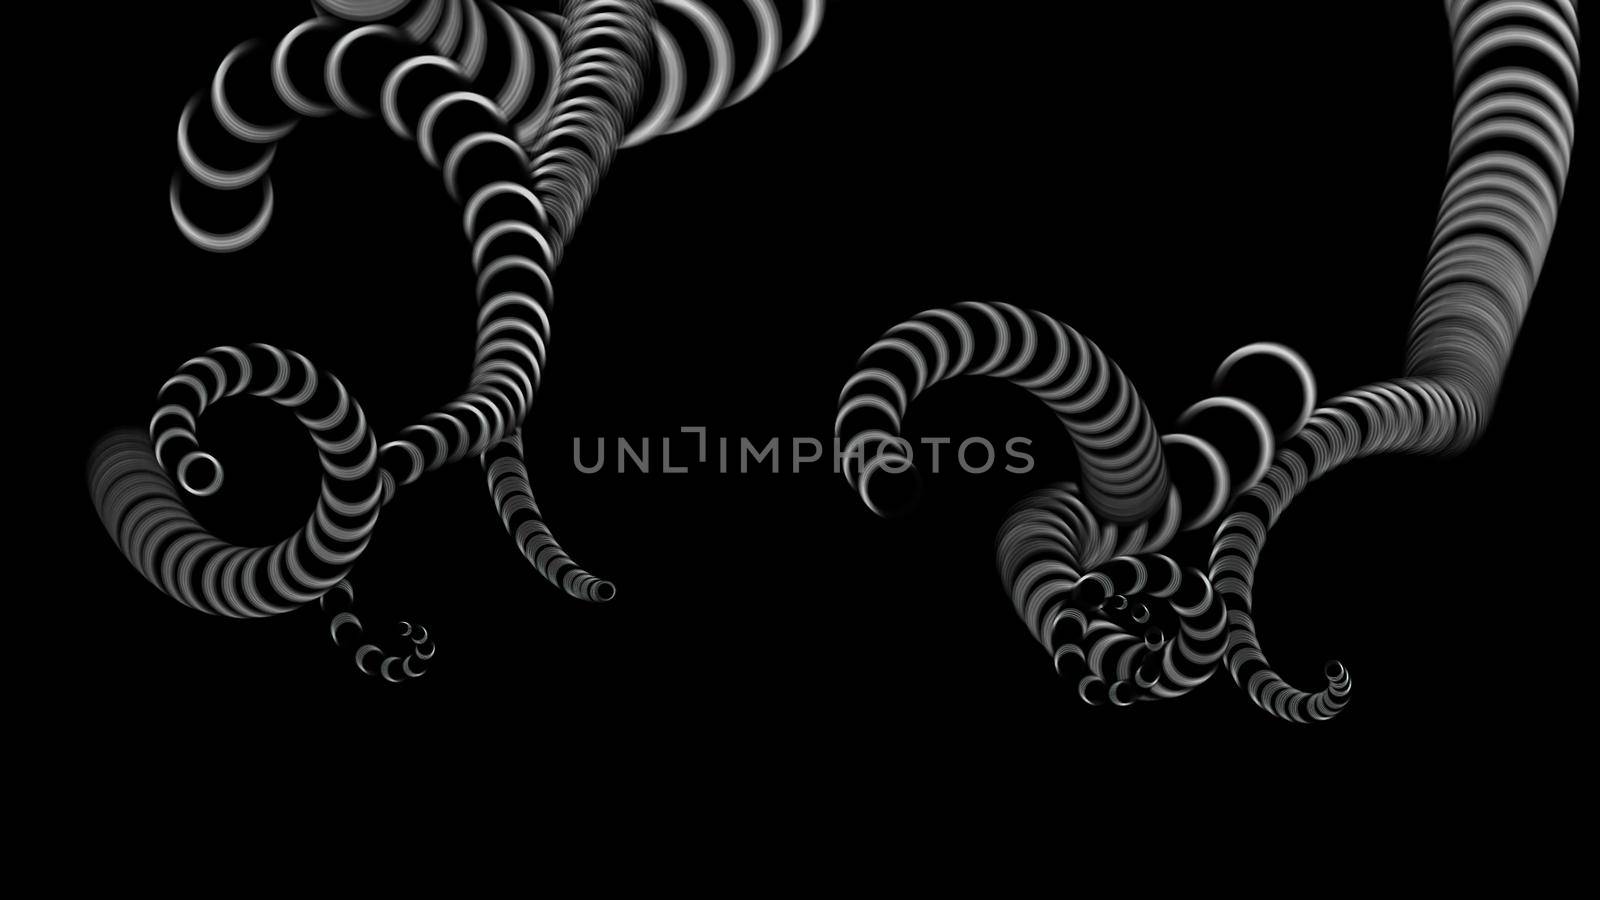 3d illustration - design of Octopus Tentacles on black background